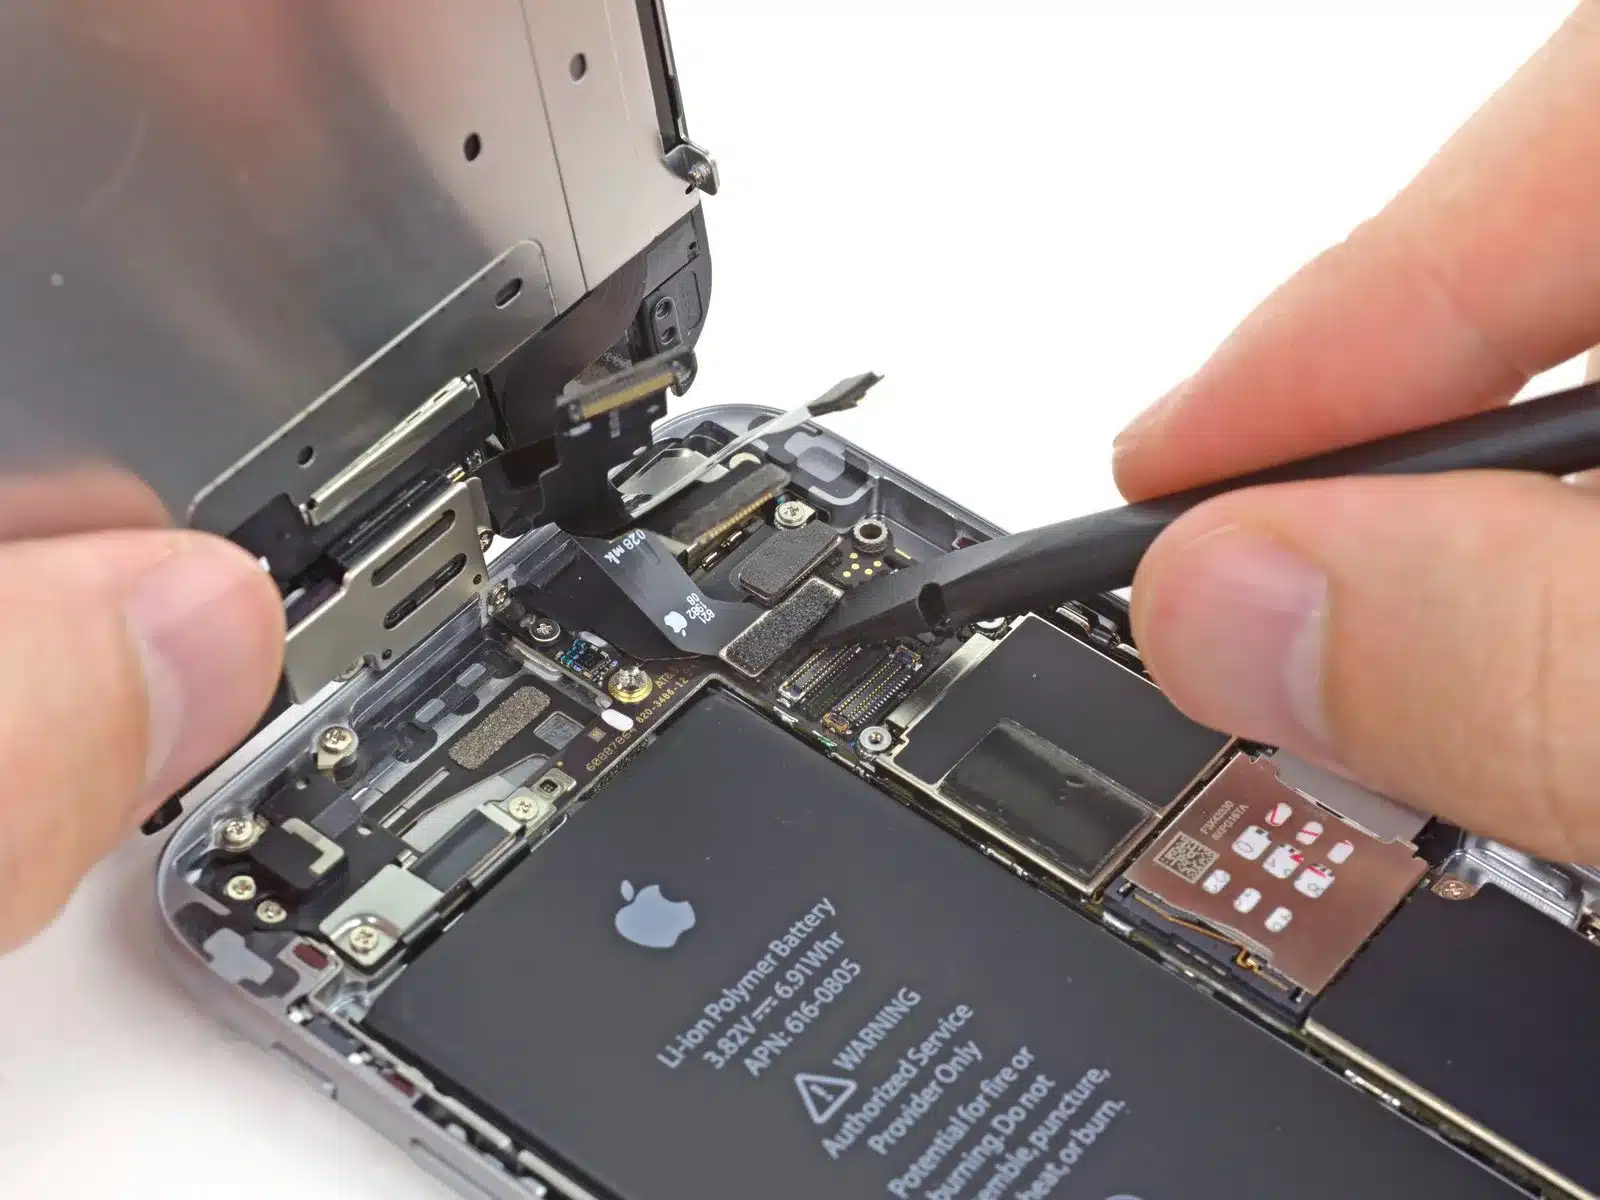 Iphone repair services